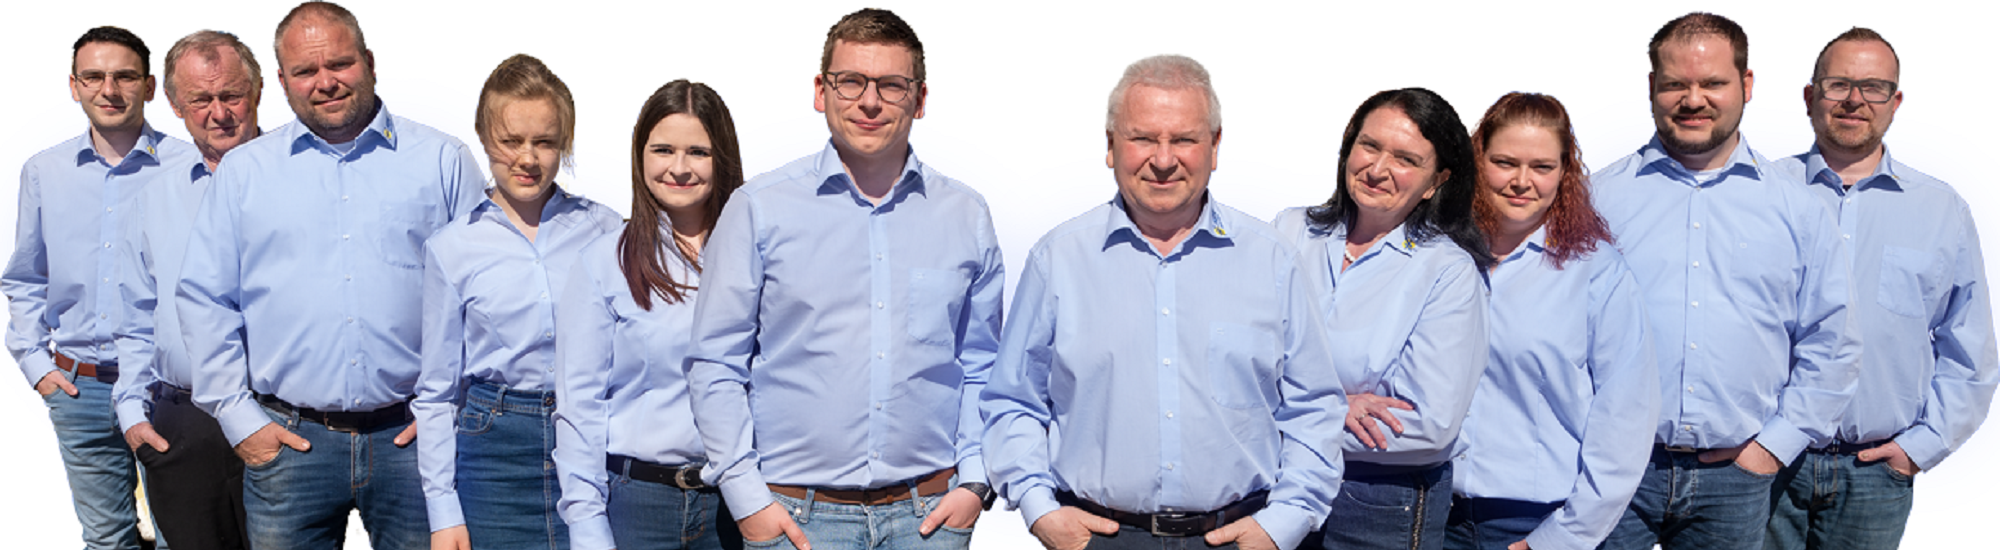 HEFA Holz- & Massivhaus GmbH ...weil Bauen Vertrauenssache ist!